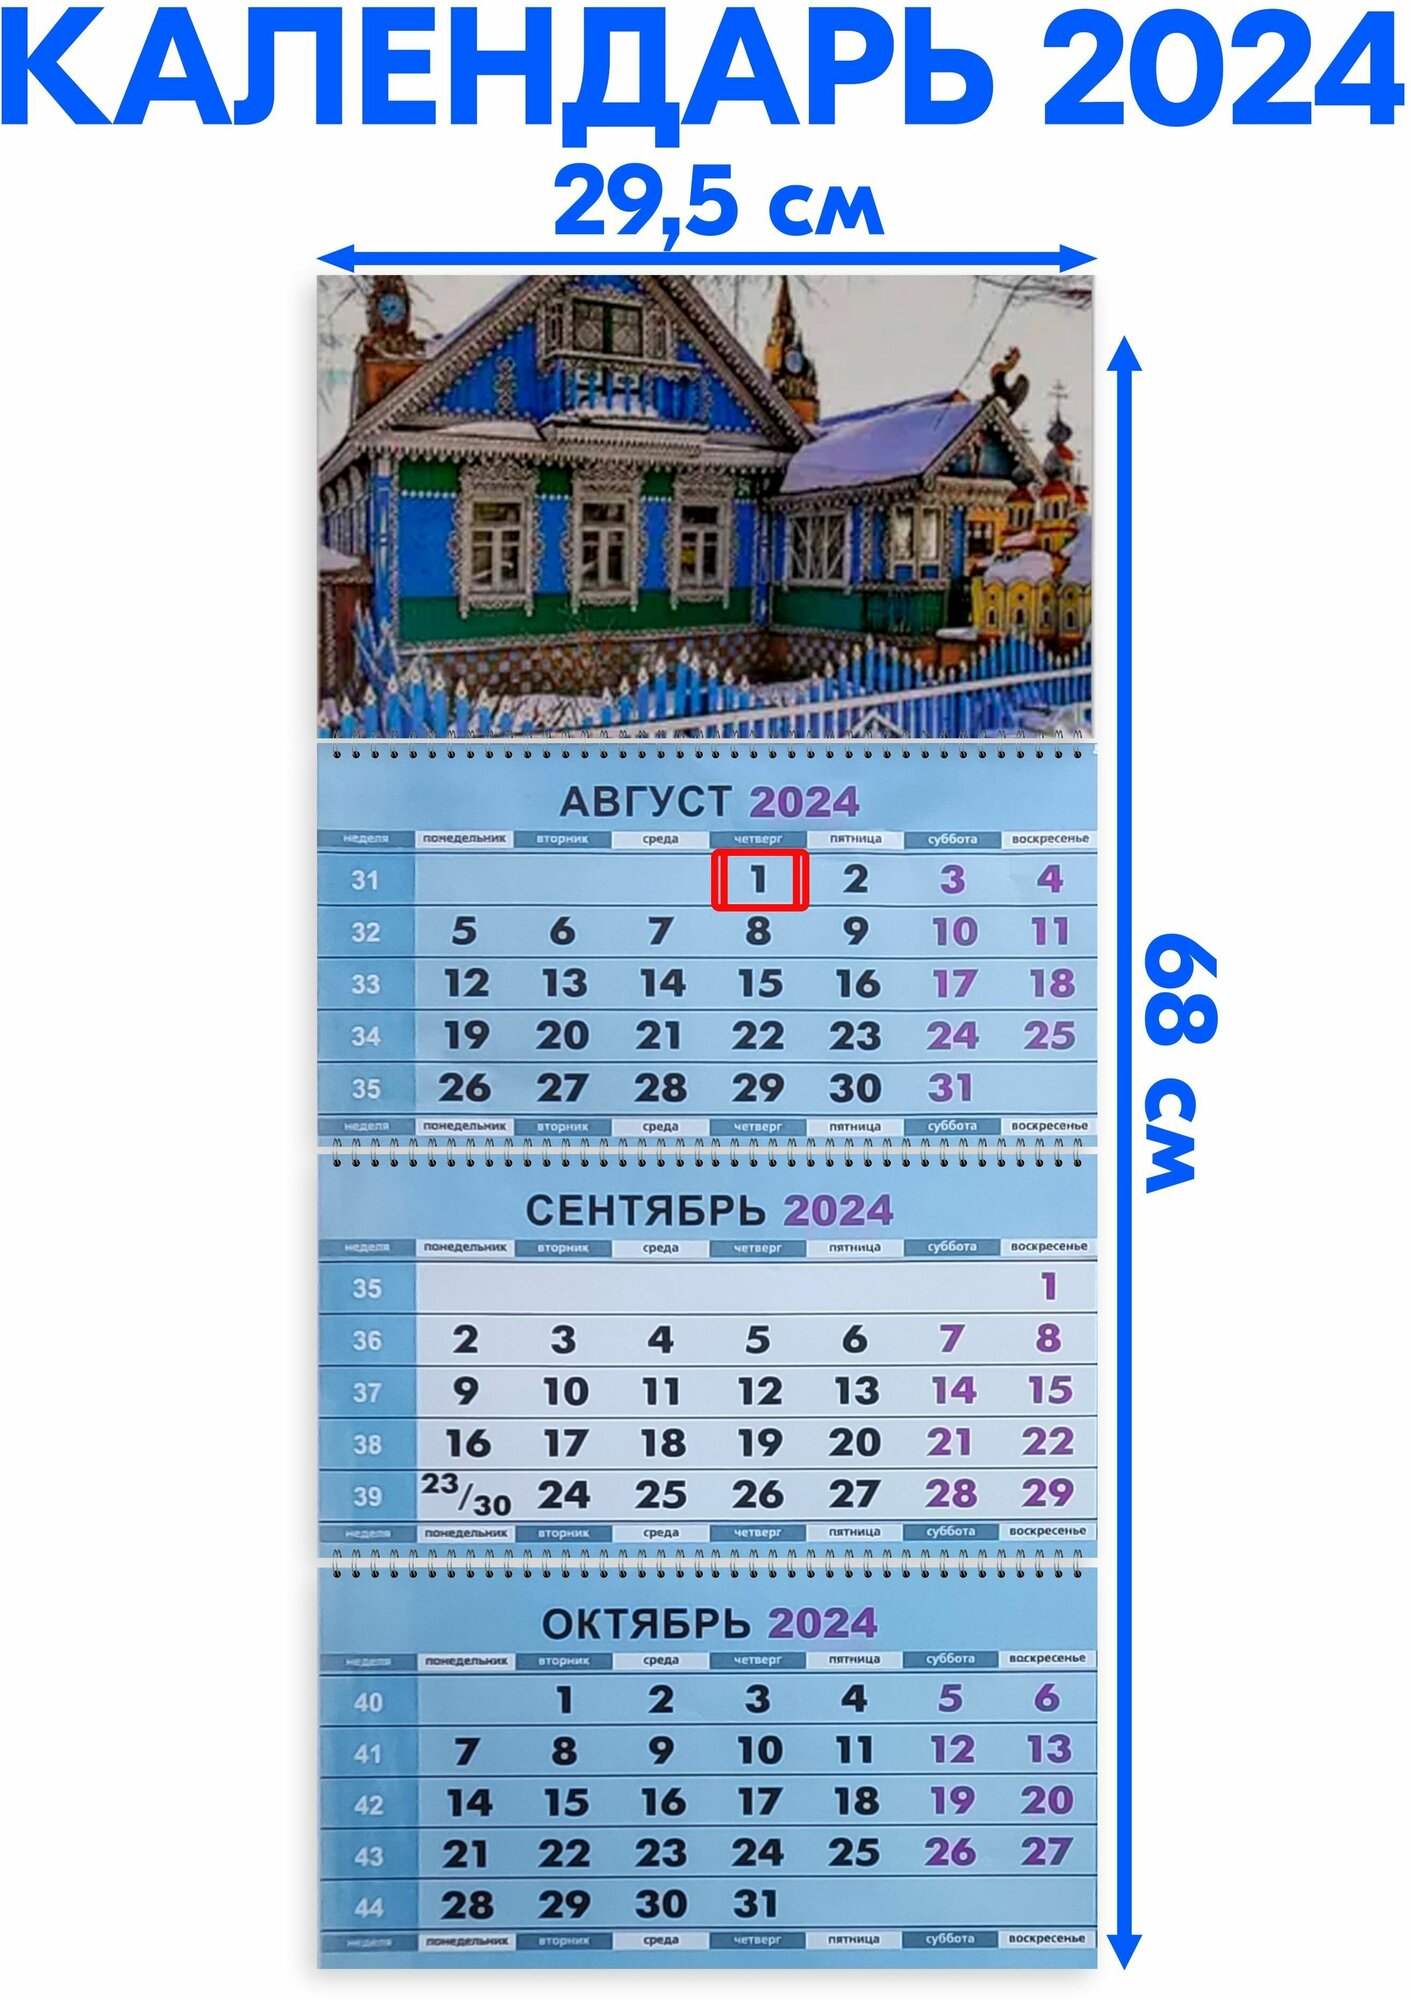 Календарь настенный 2024 трехблочный квартальный Изба, Терем. Длина календаря в развёрнутом виде - 68 см, ширина - 29,5 см.